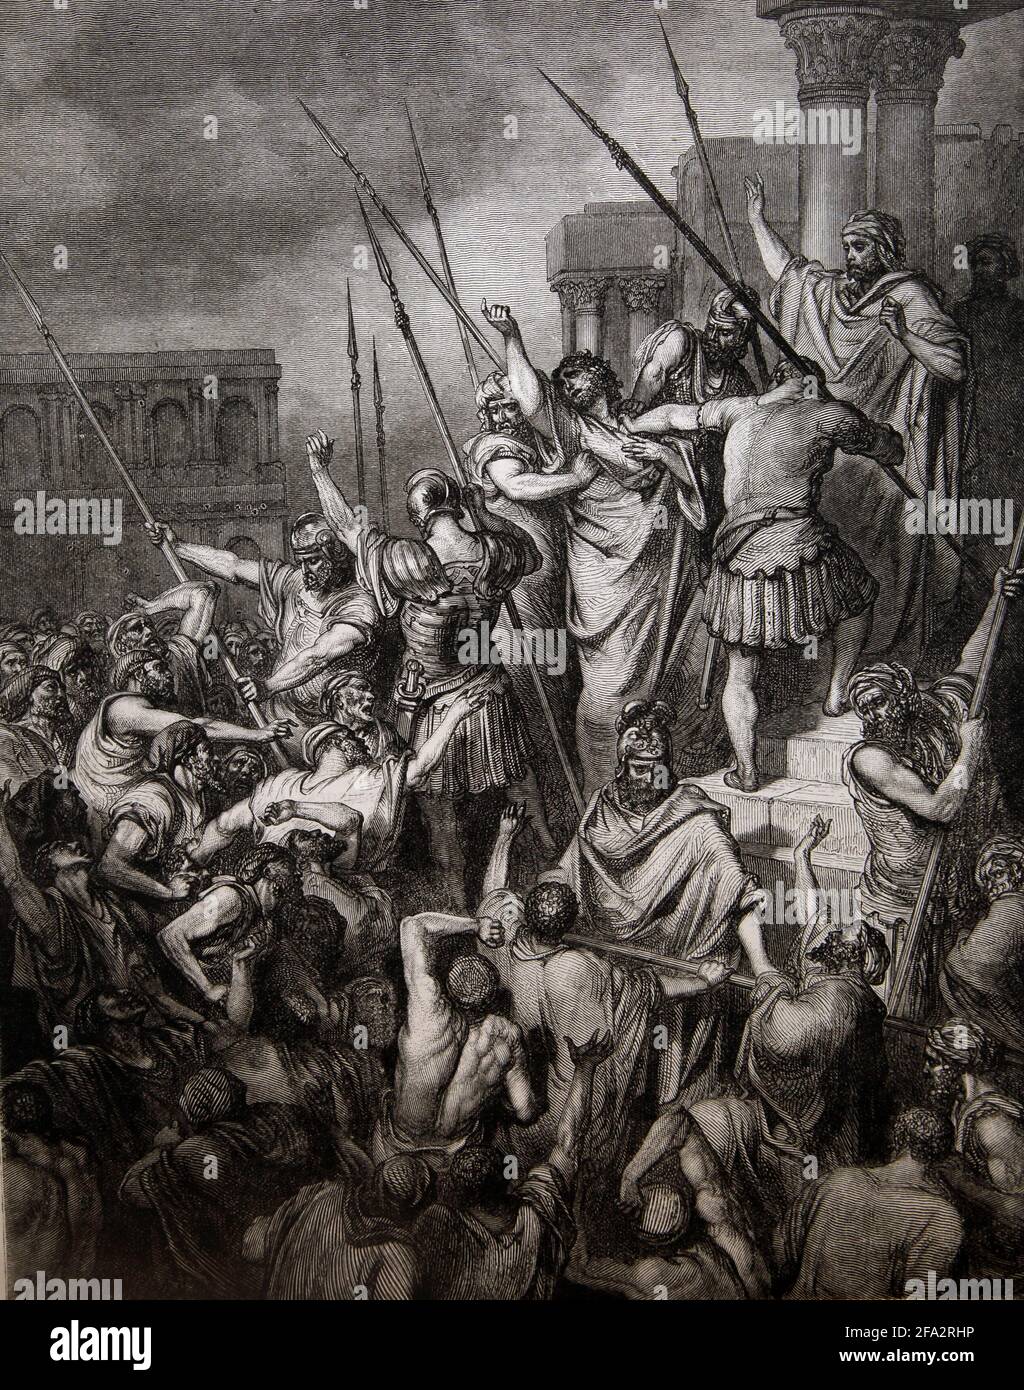 Histoire de la Bible Illustration de Saint Paul sauvé de la multitude (Actes 21:34-35) par Gustave Dore Banque D'Images